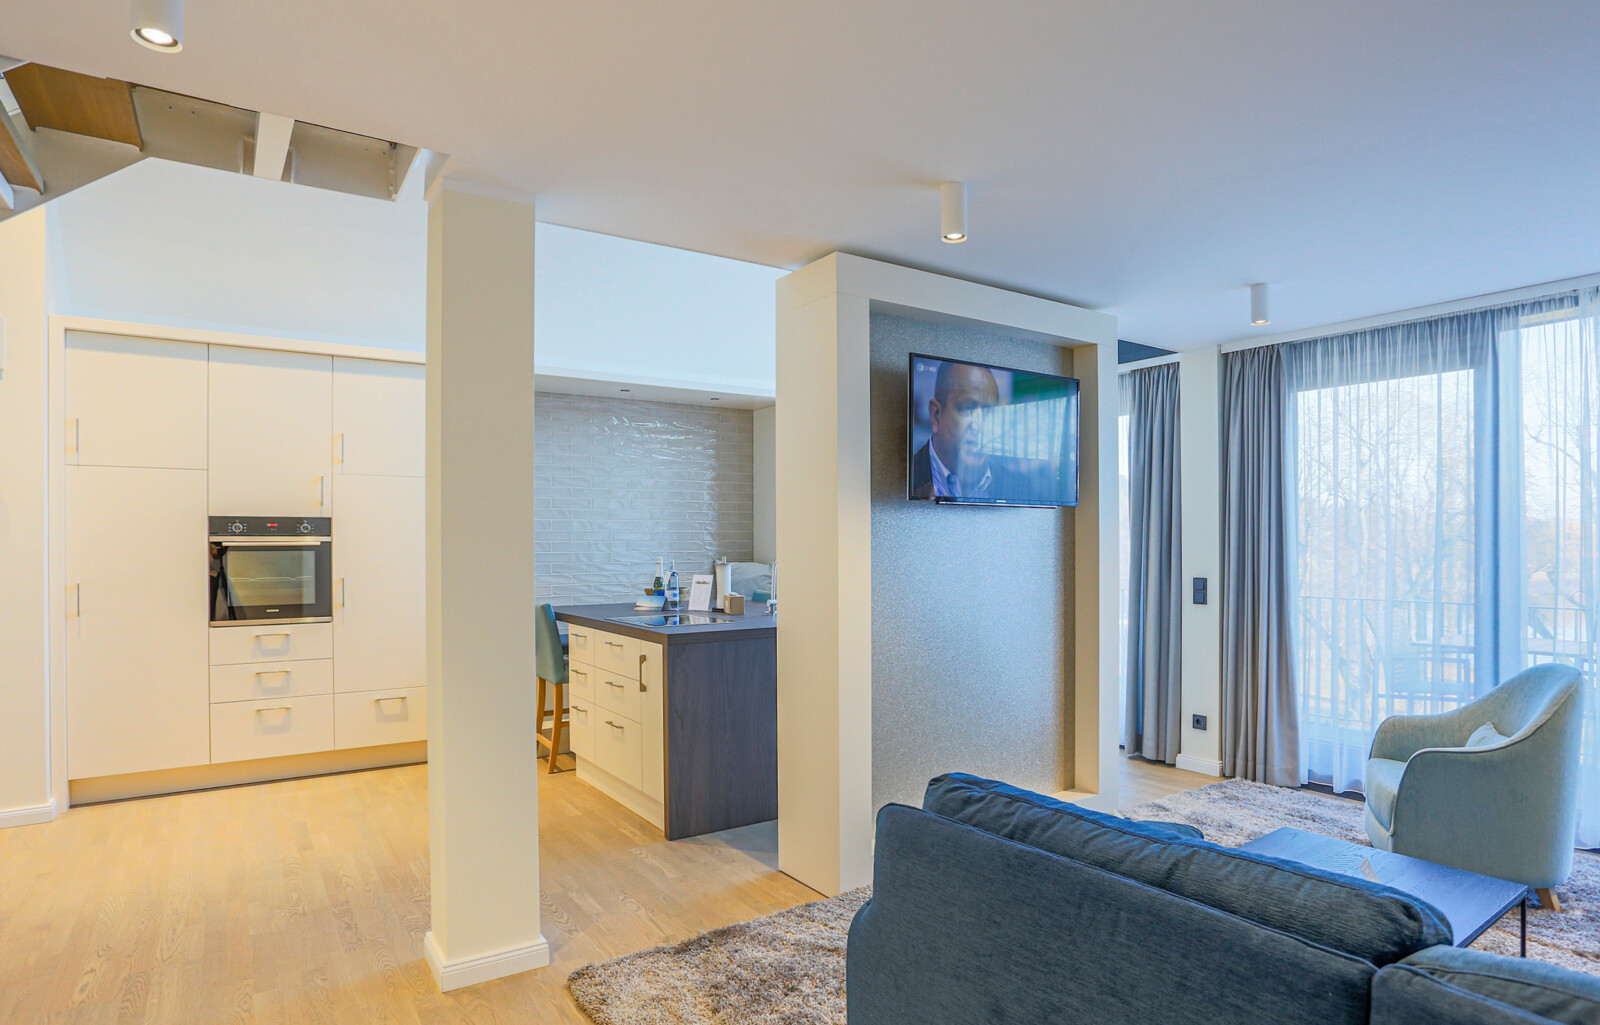 Wohnbereich mit Fernseher und Küche in der Kompass Maisonette Suite.